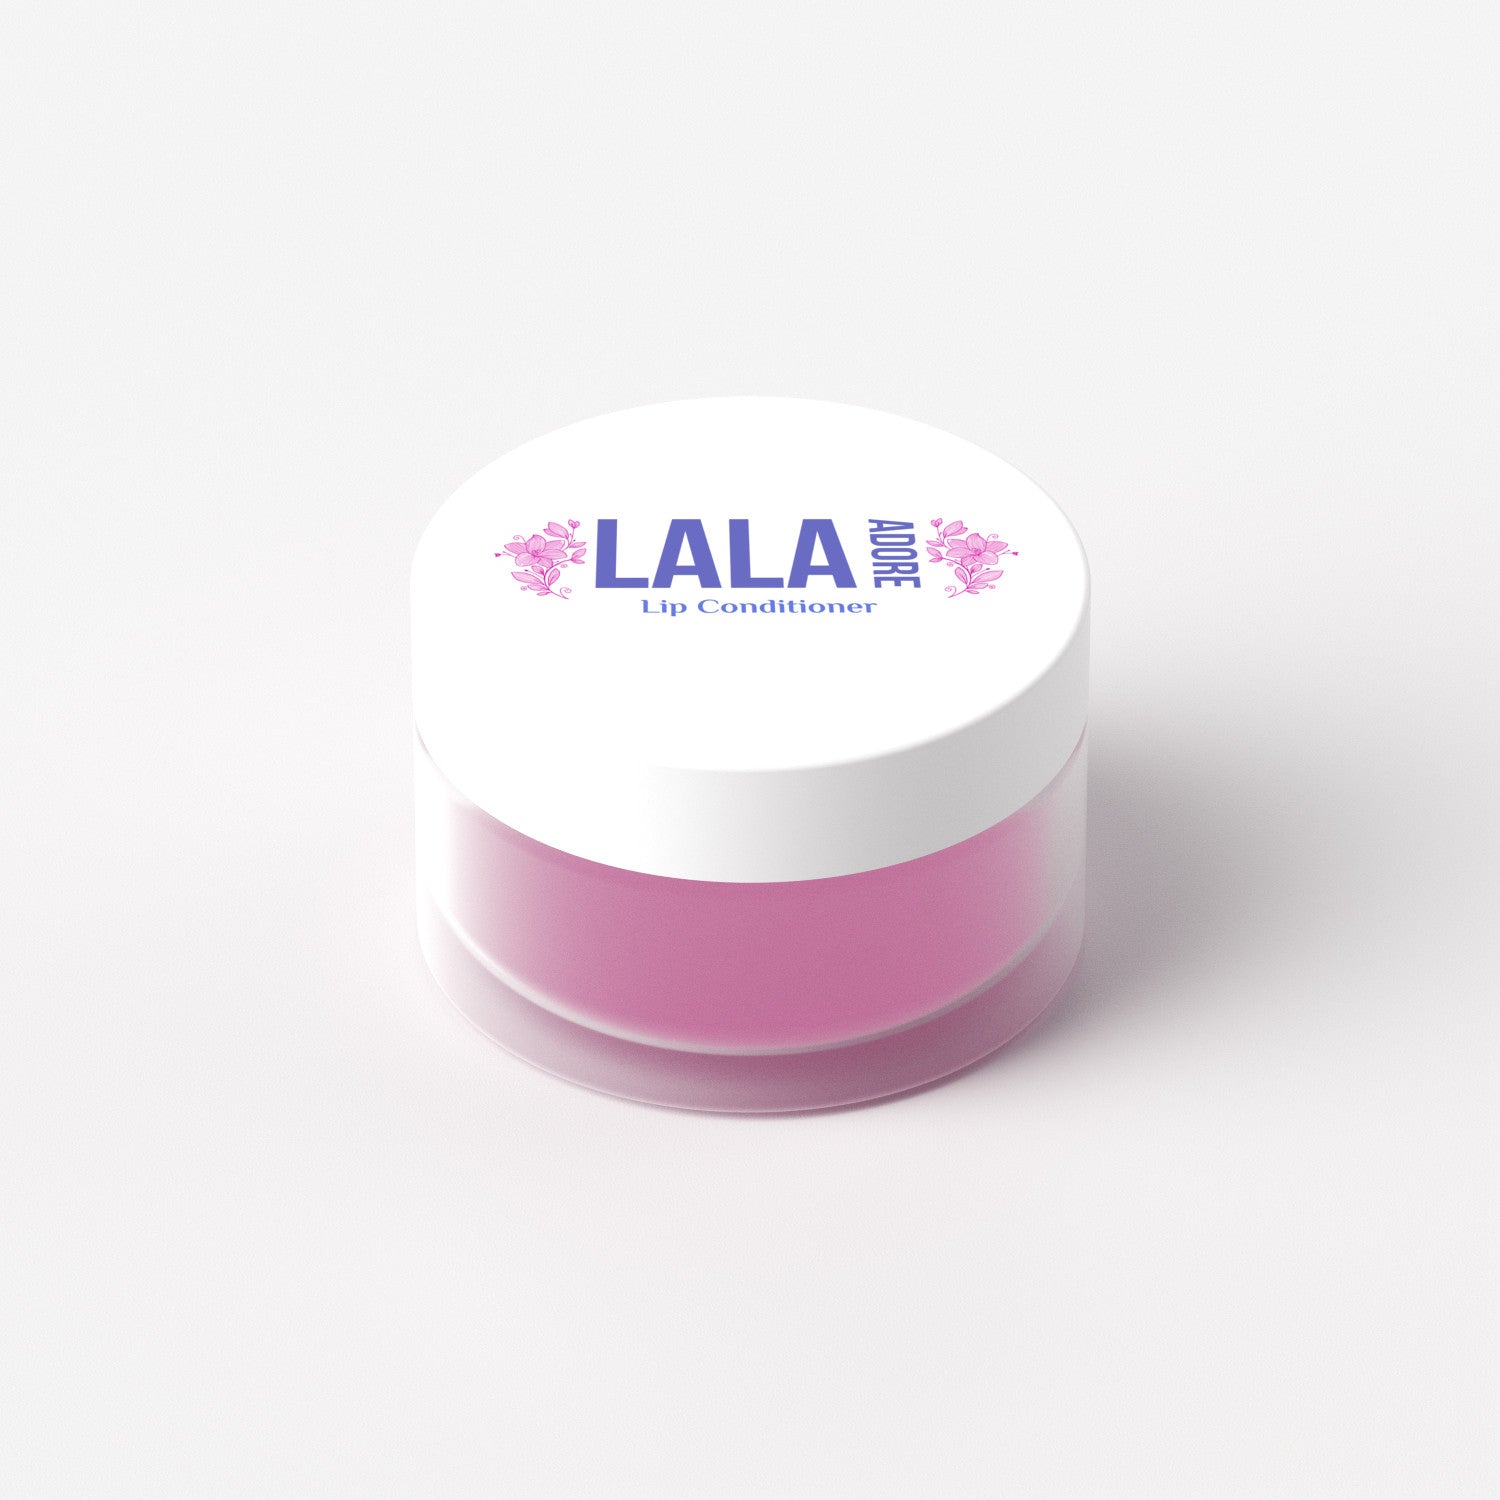 Lip Conditioners - Lala Adore